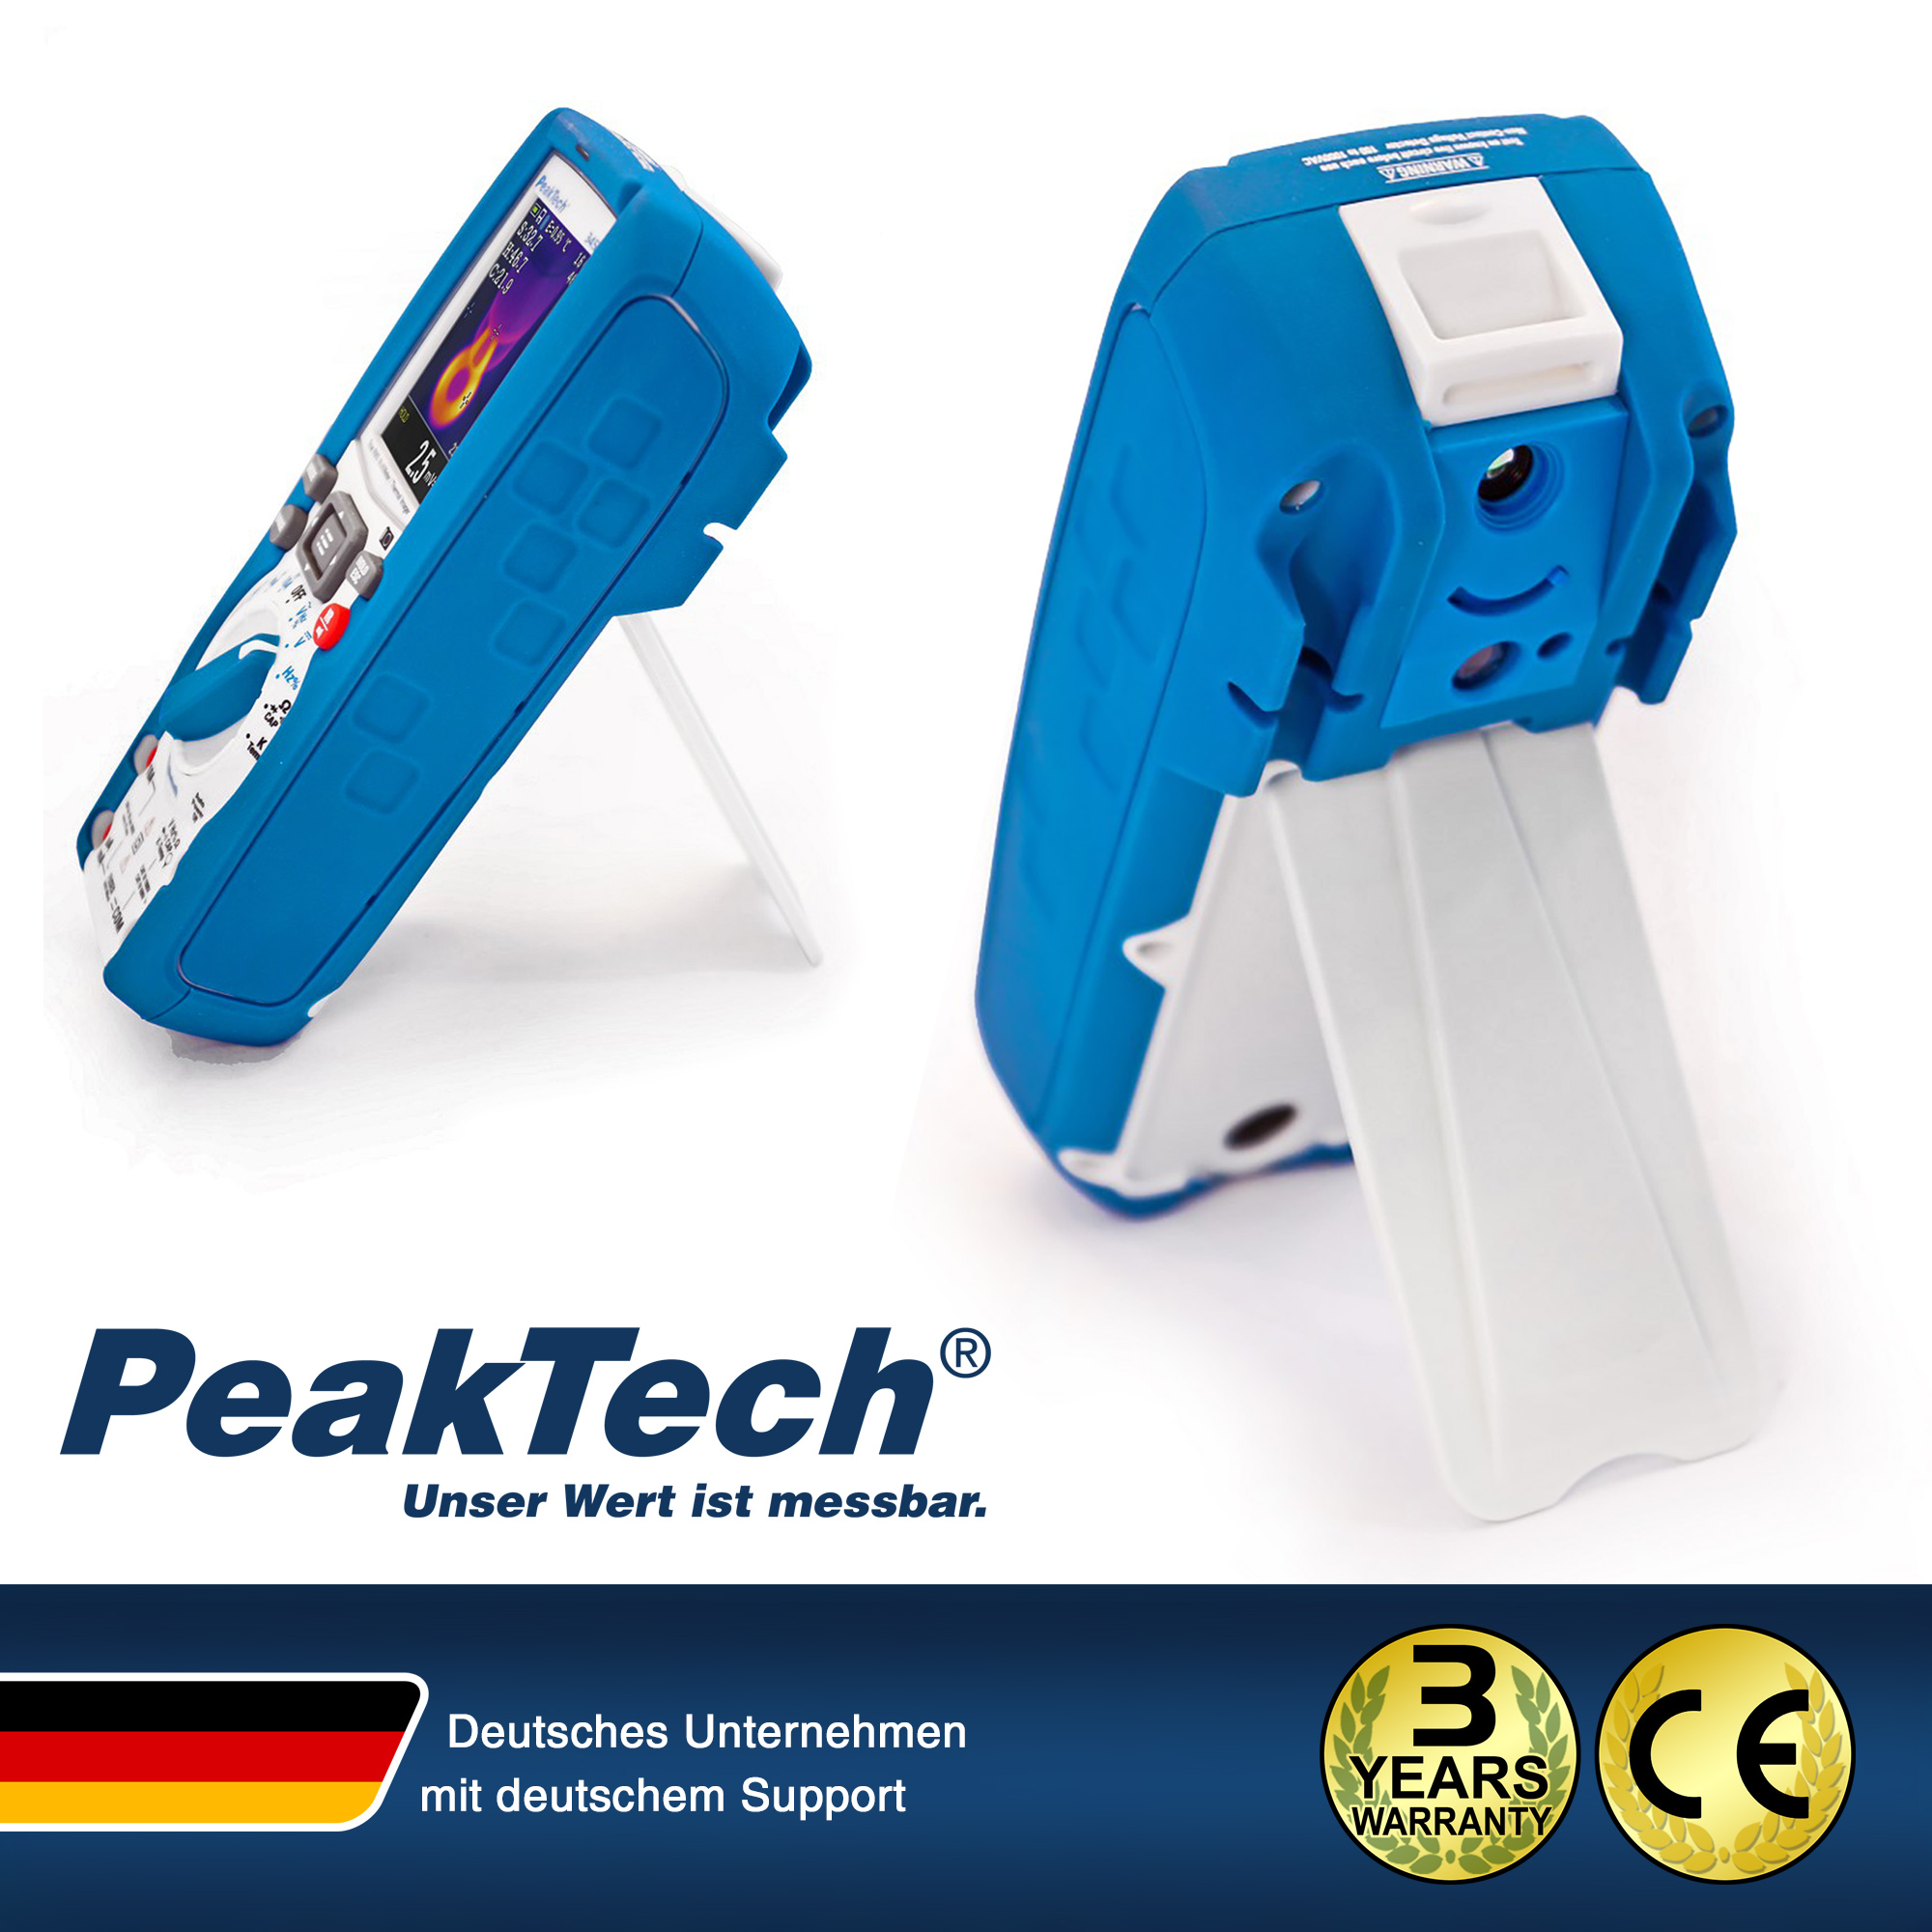 «PeakTech® P 3450 A» Multimètre TrueRMS et caméra thermique